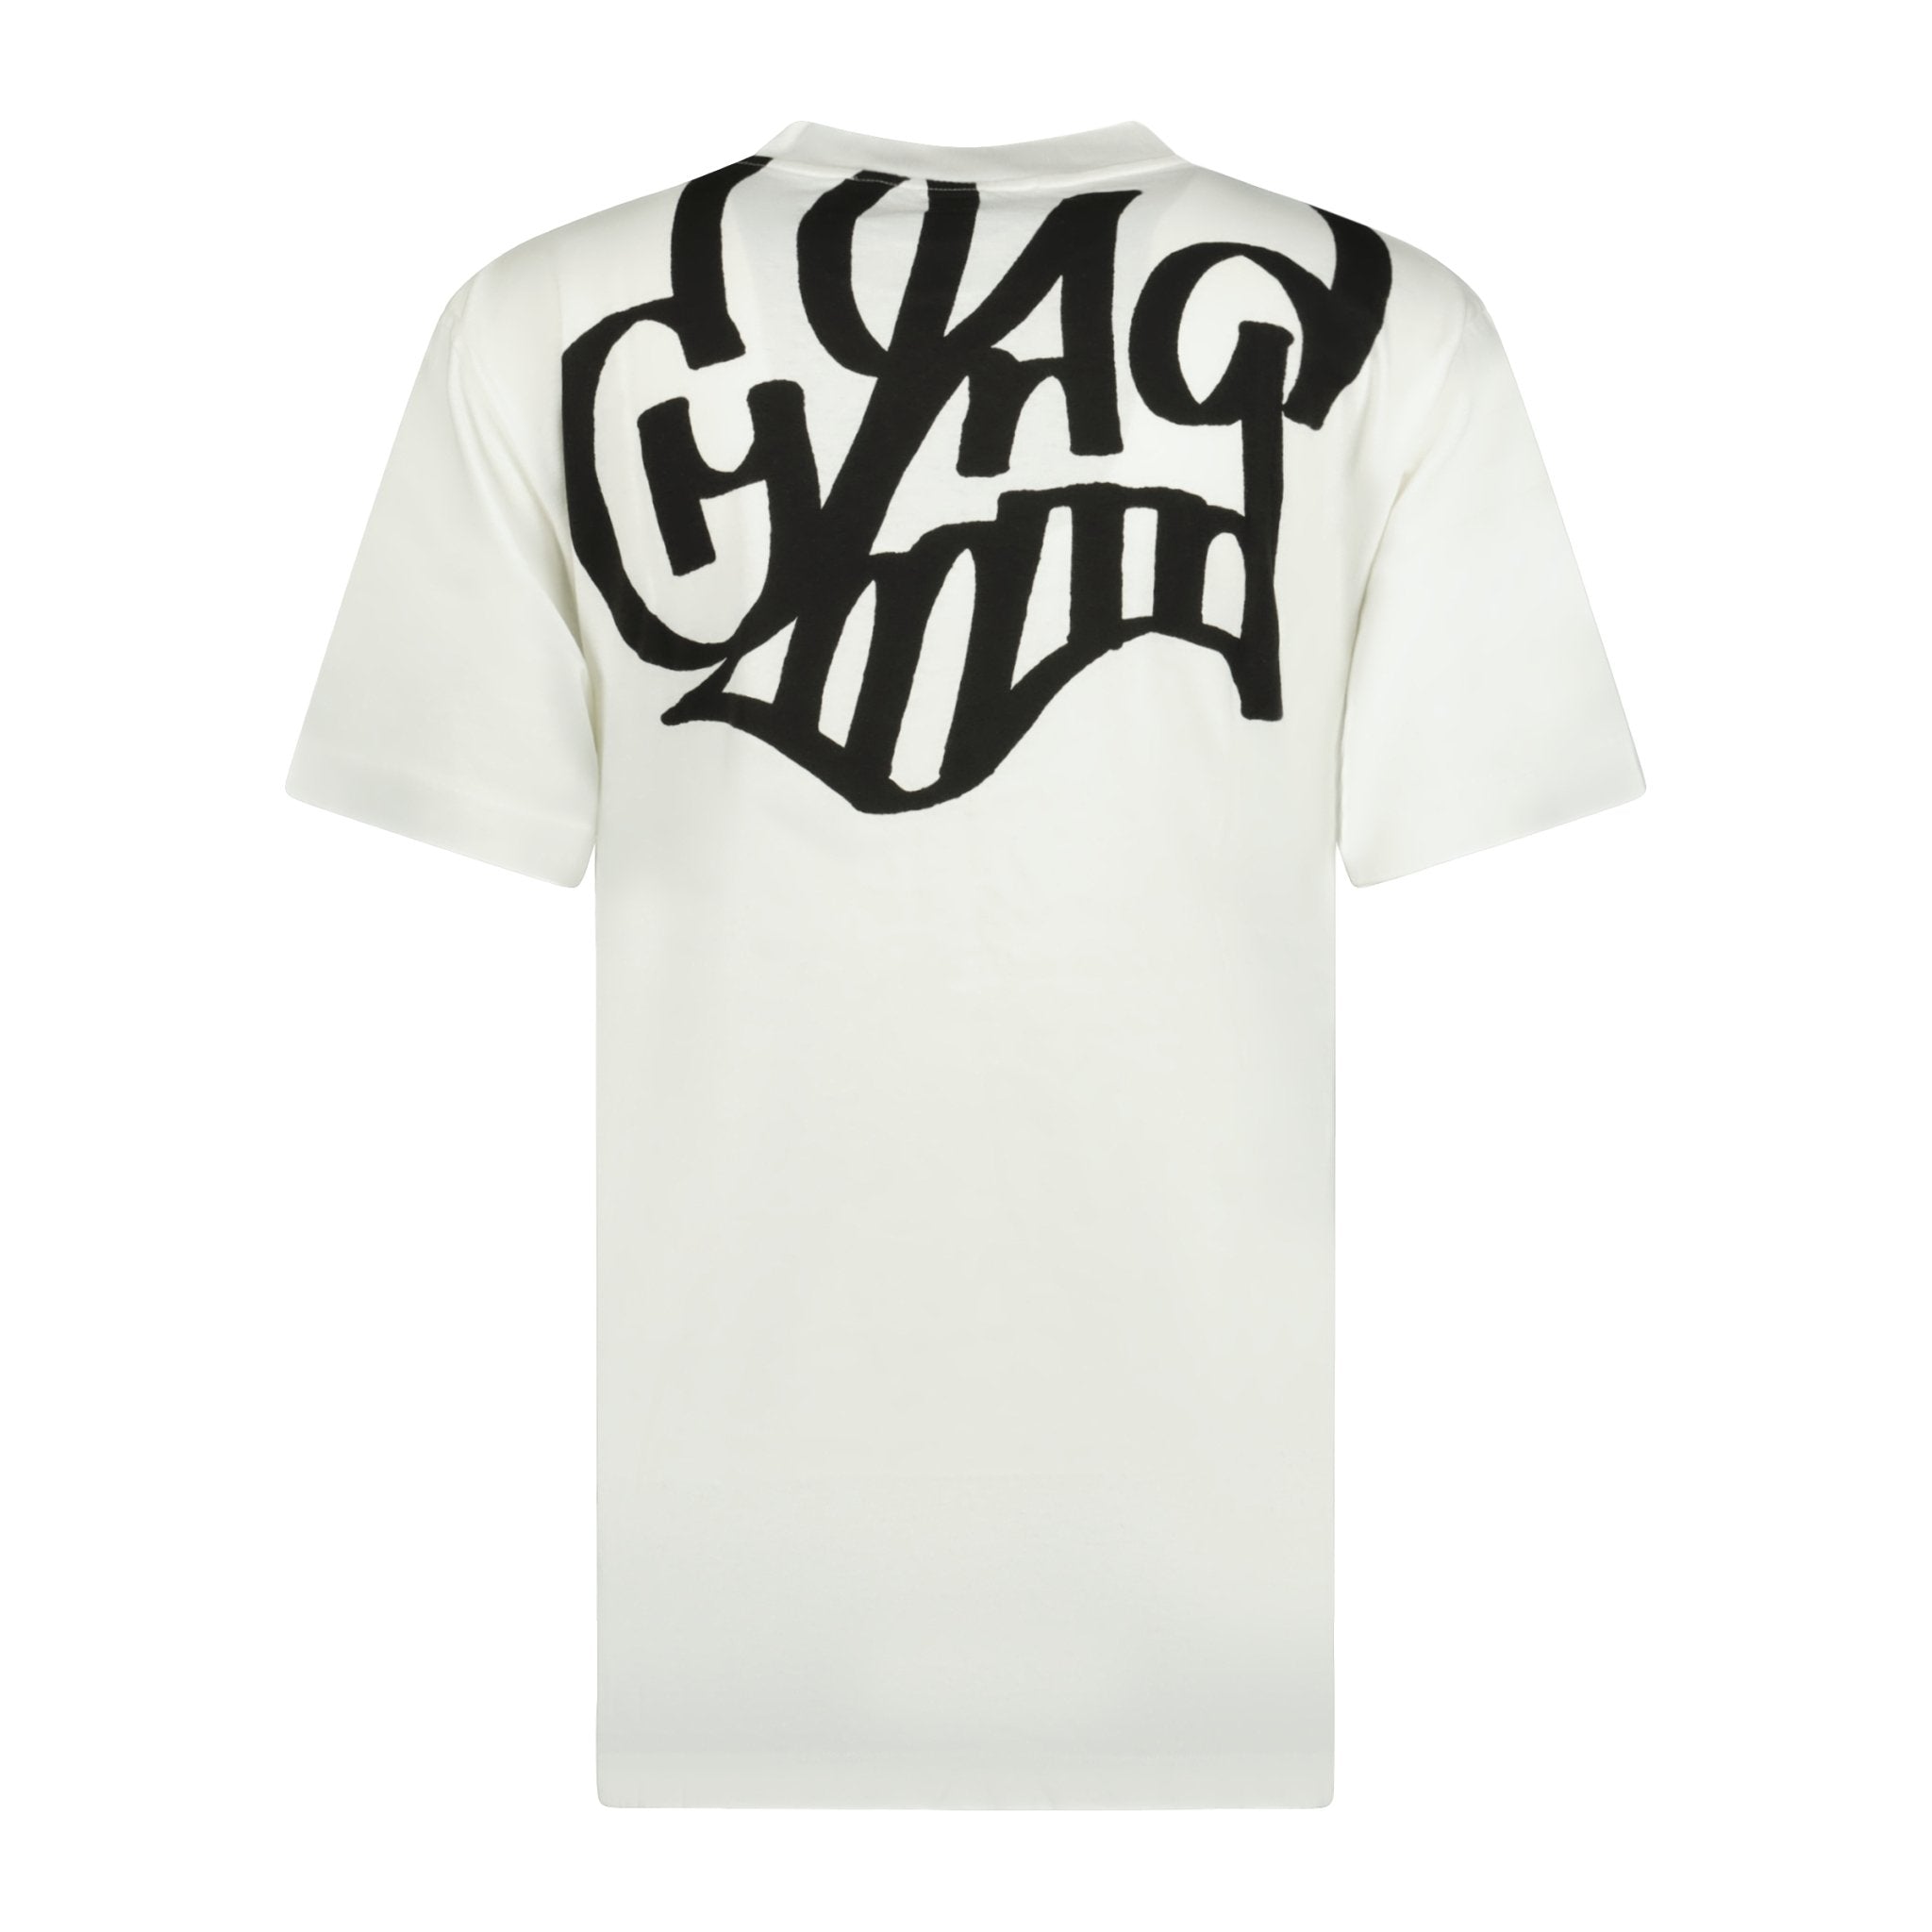 OFF-WHITE Katsu Graffiti T-Shirt White, Boinclo ltd